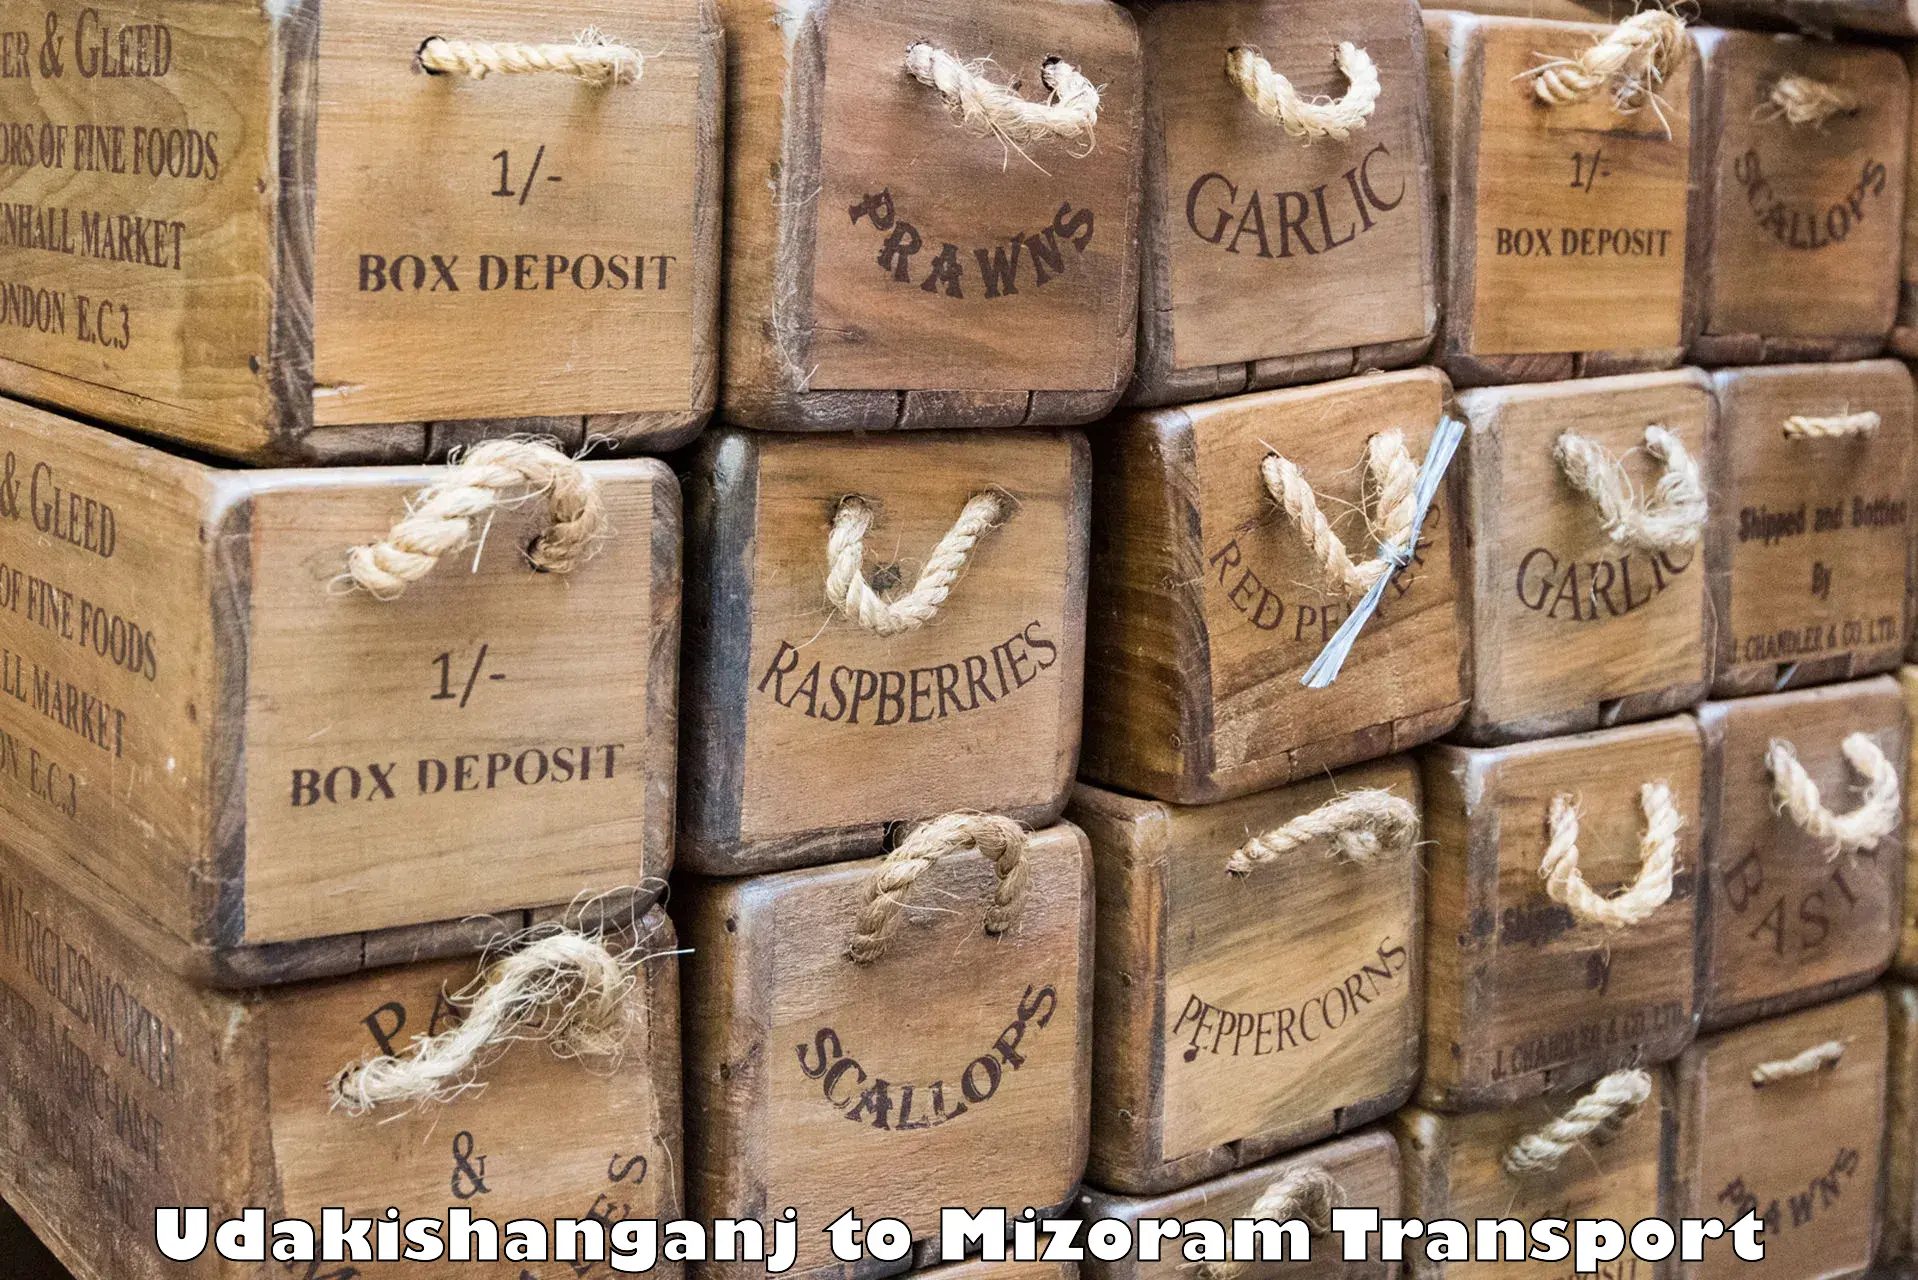 Cargo transport services in Udakishanganj to Thenzawl